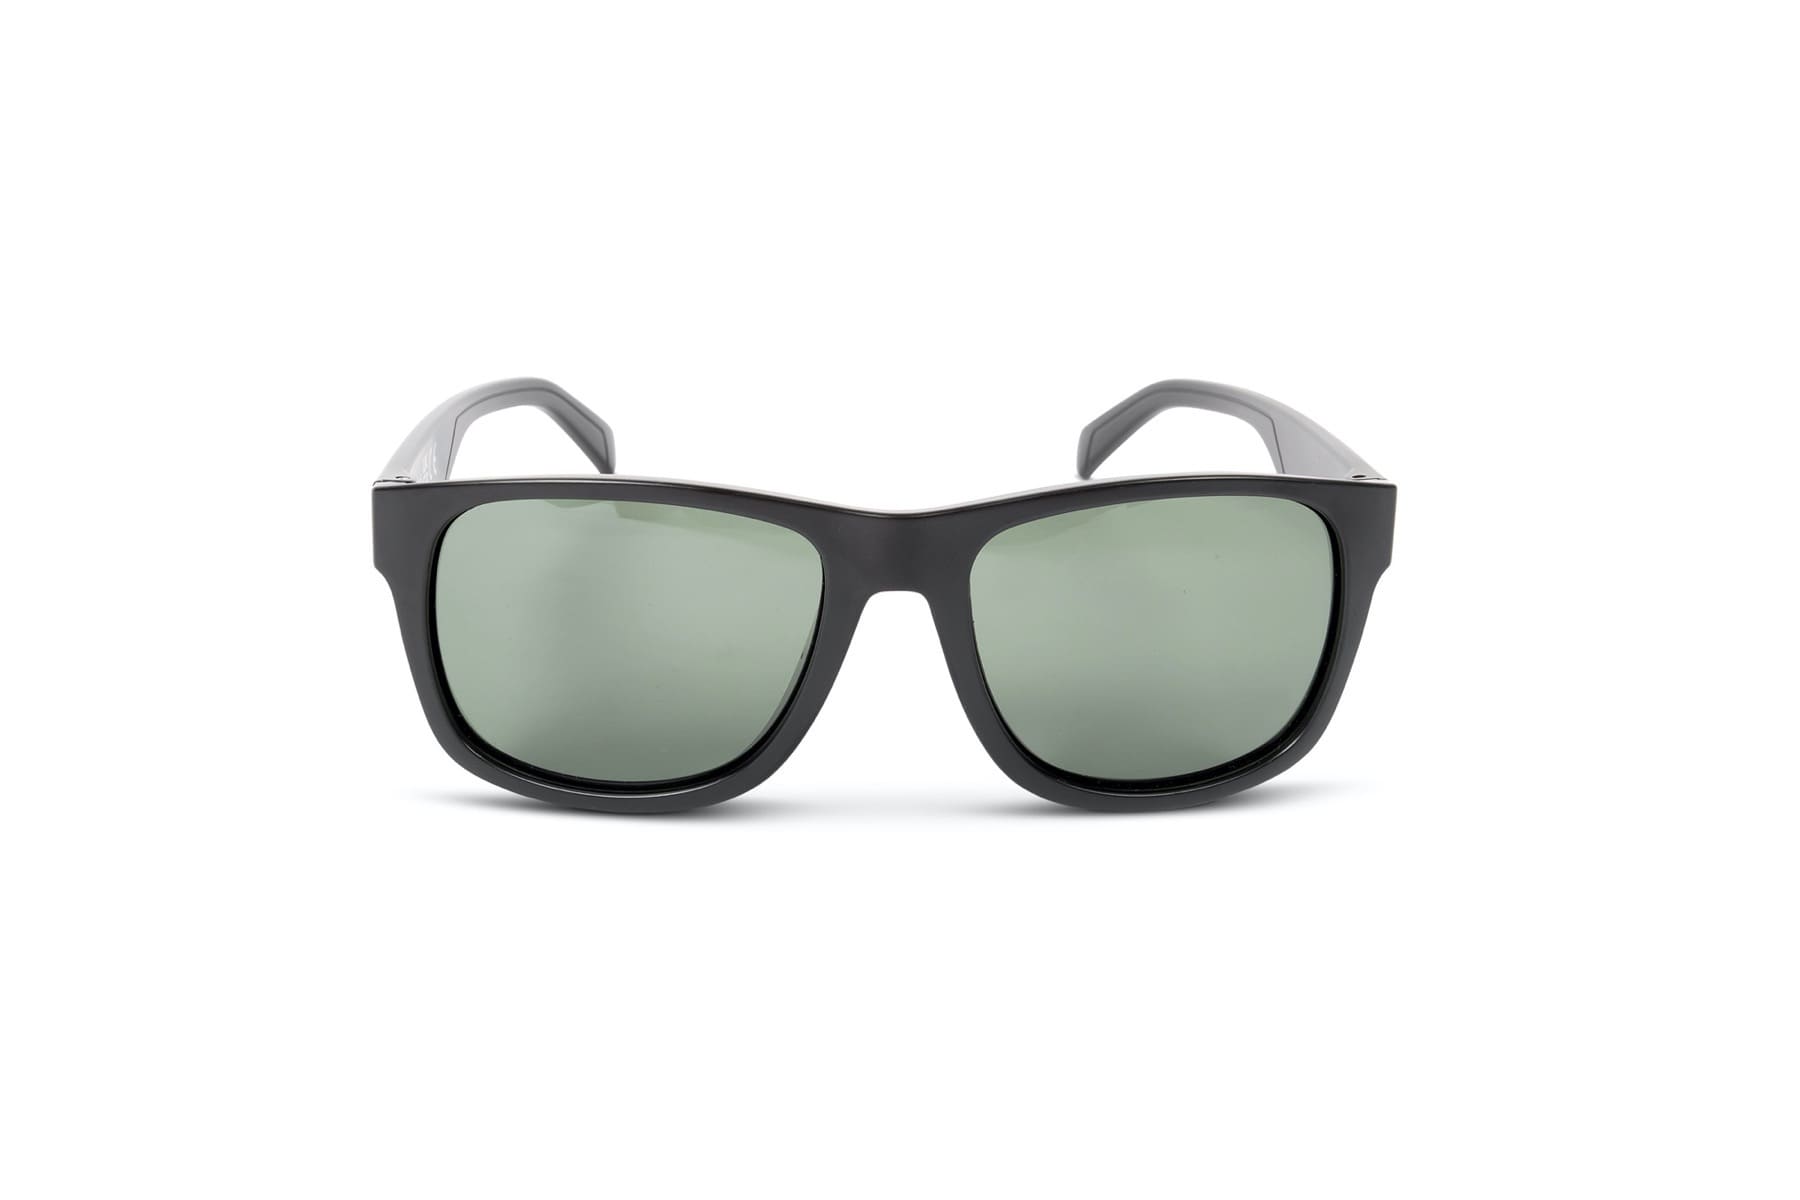 Preston inception leisure sunglasses green lens